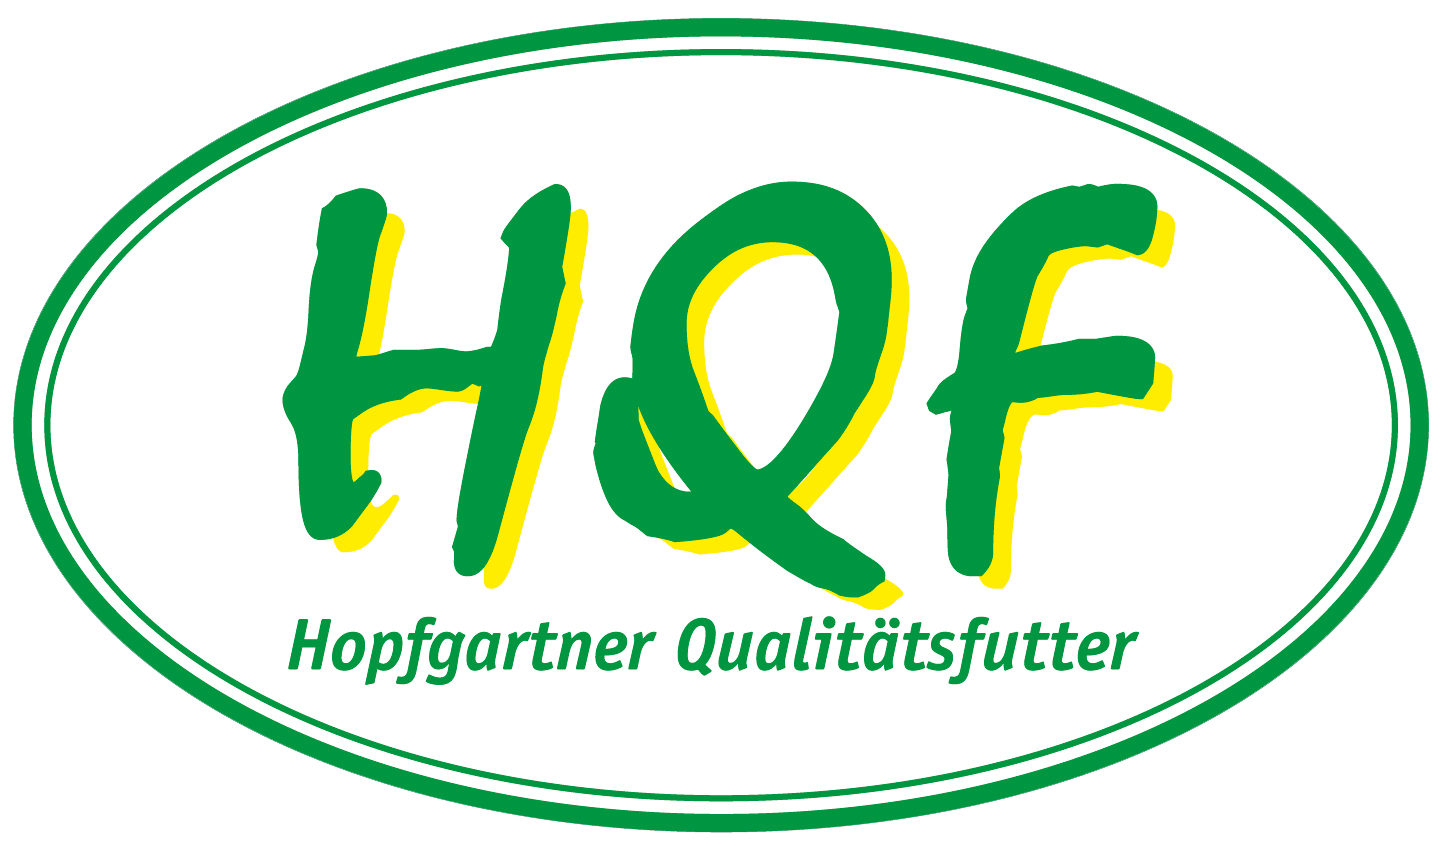 Hopfgartner Qualitätsfutter